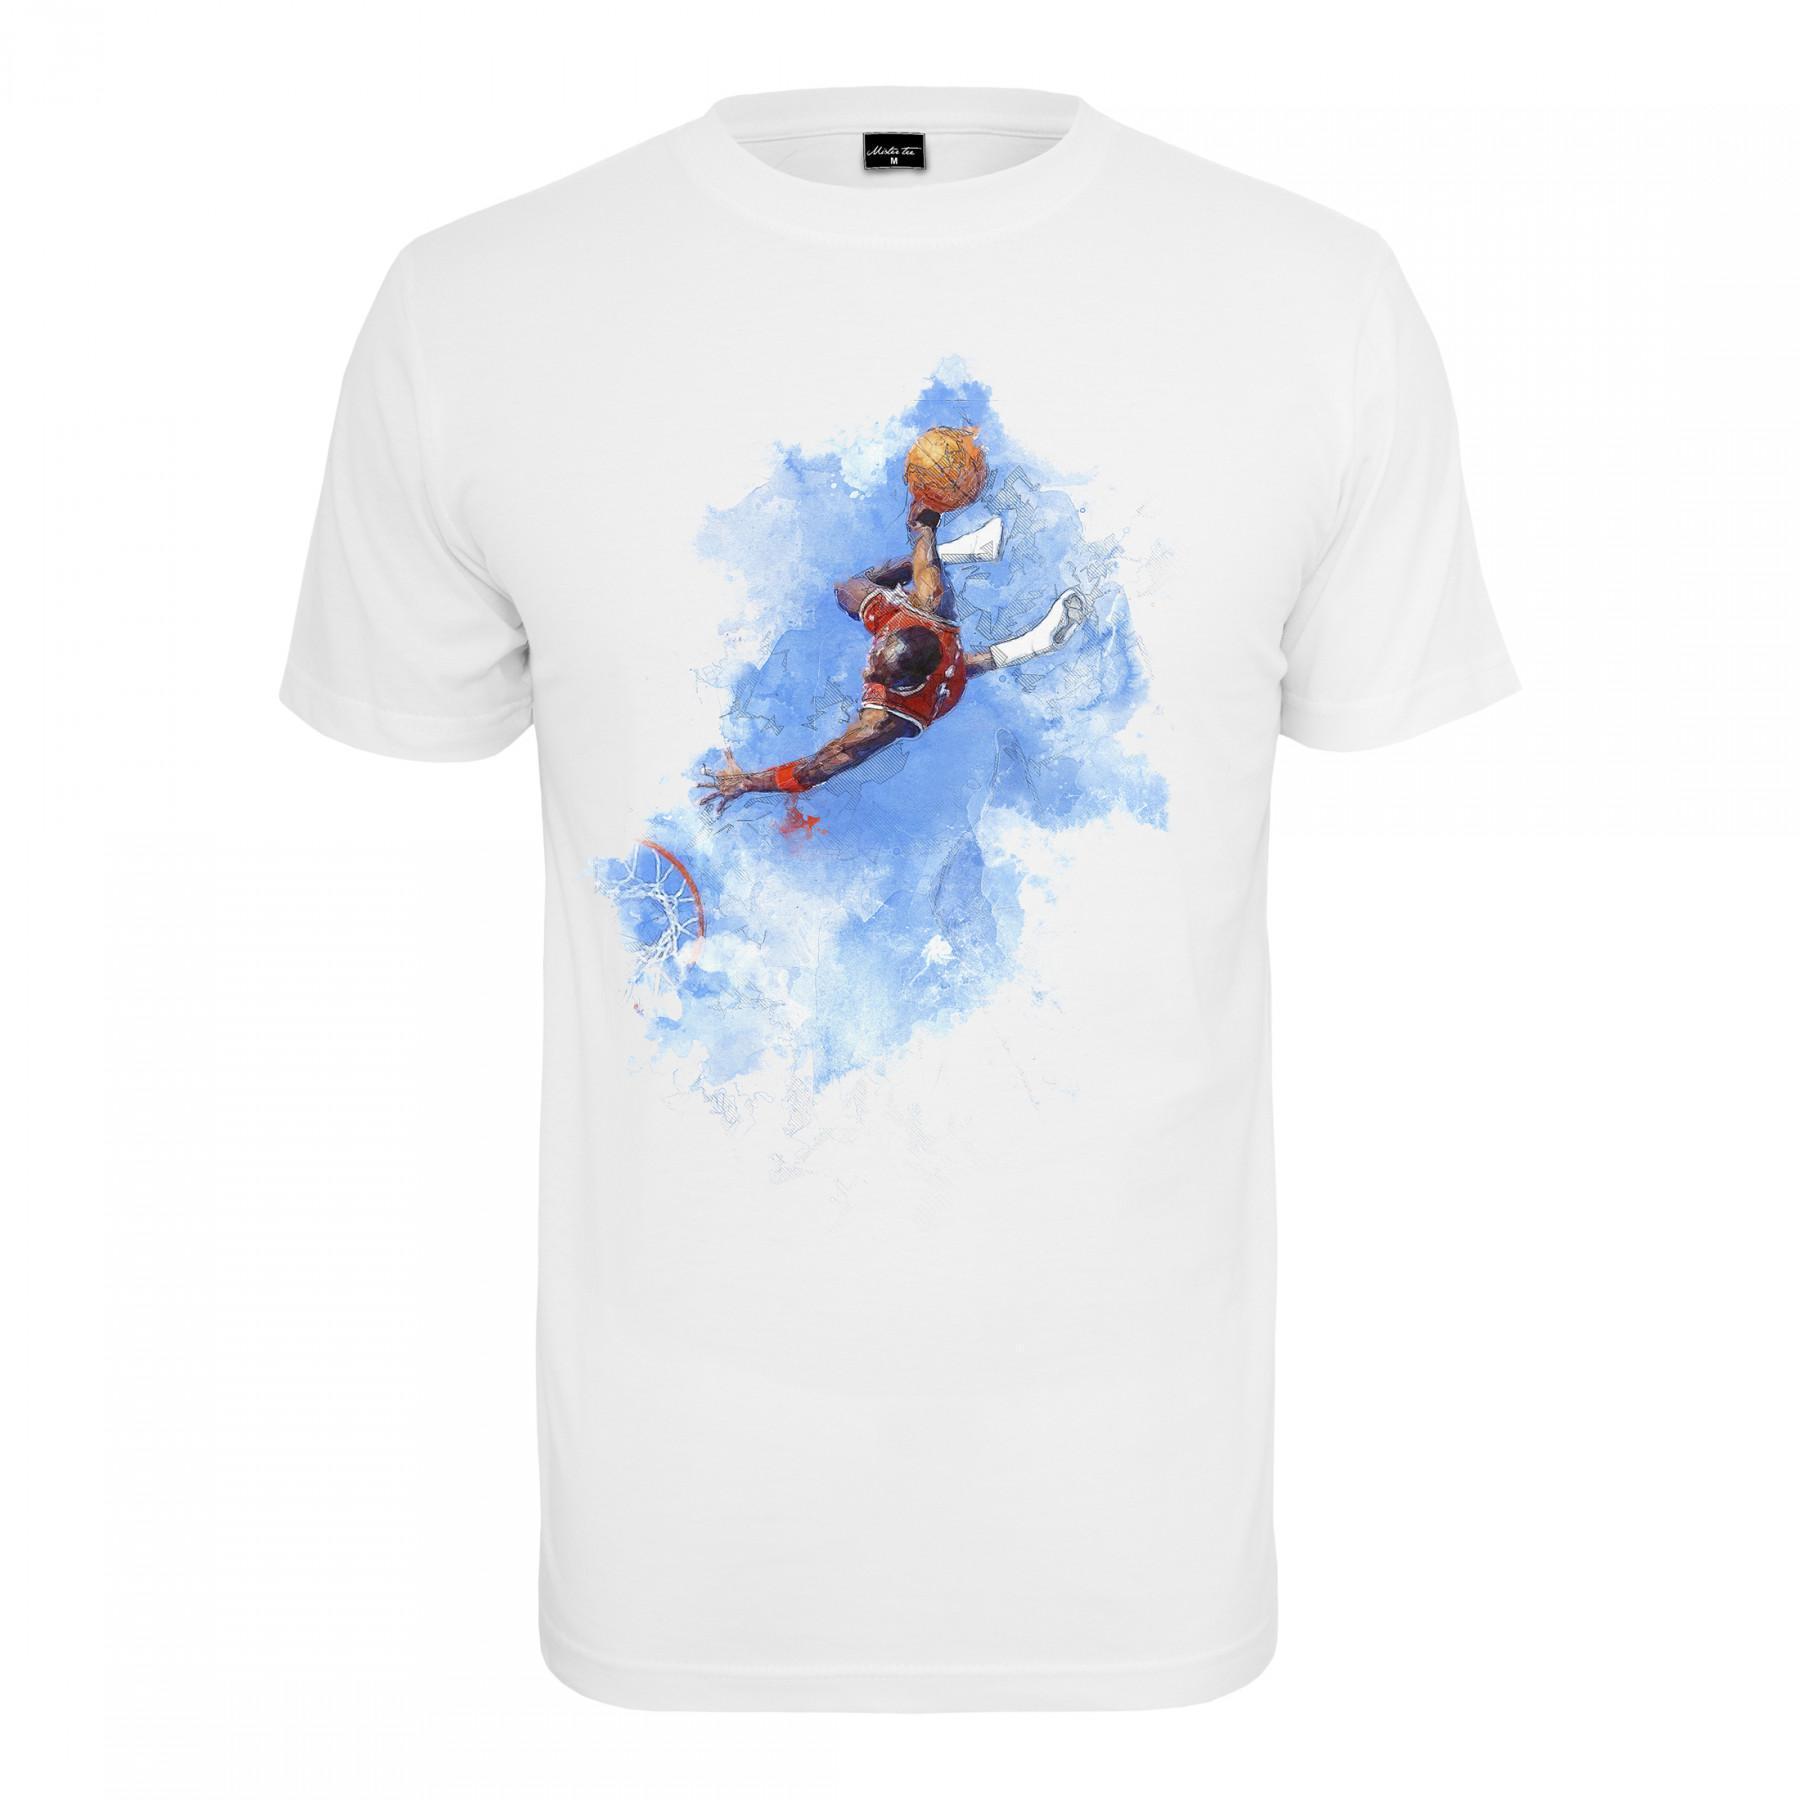 T-shirt Mister Tee basquetebol clouds